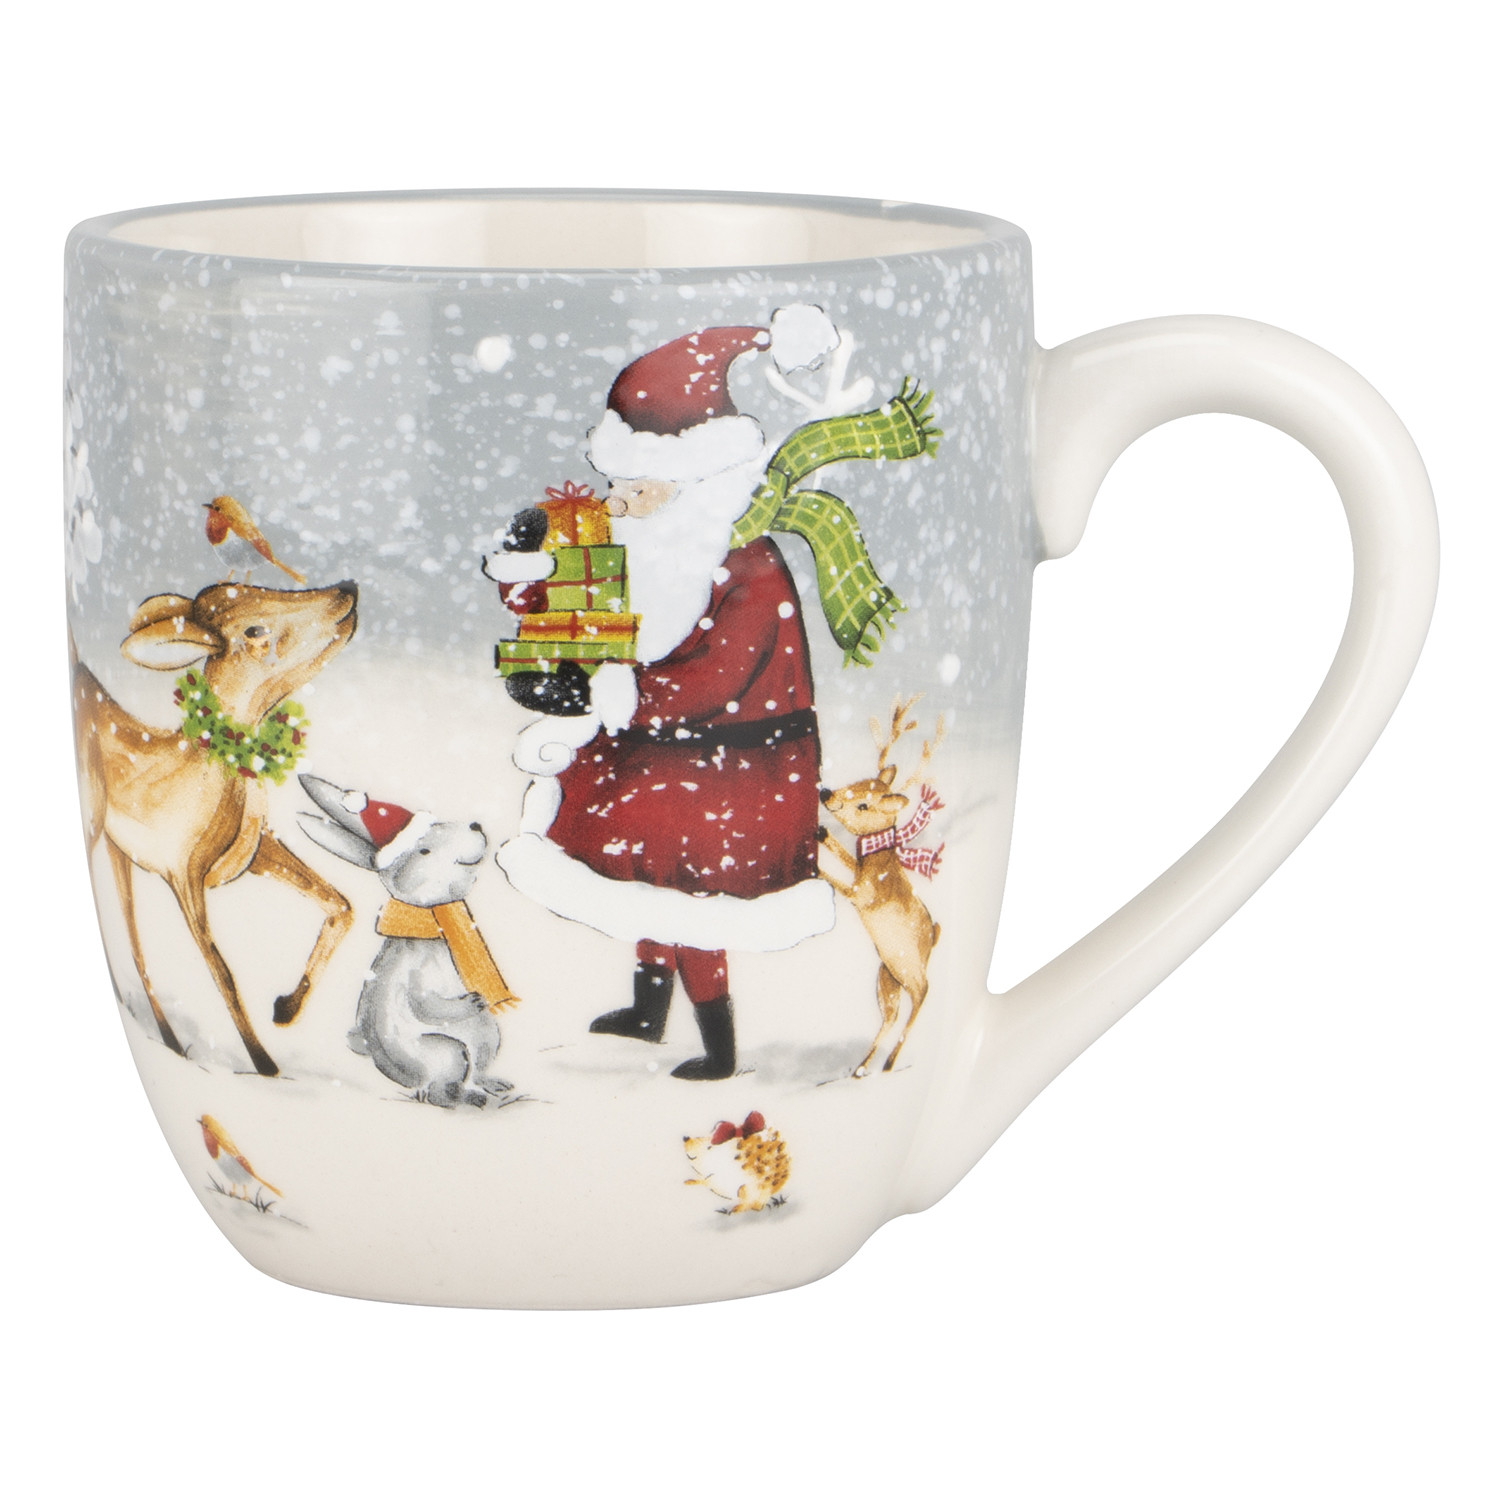 Whimsical Christmas Scene Mug Image